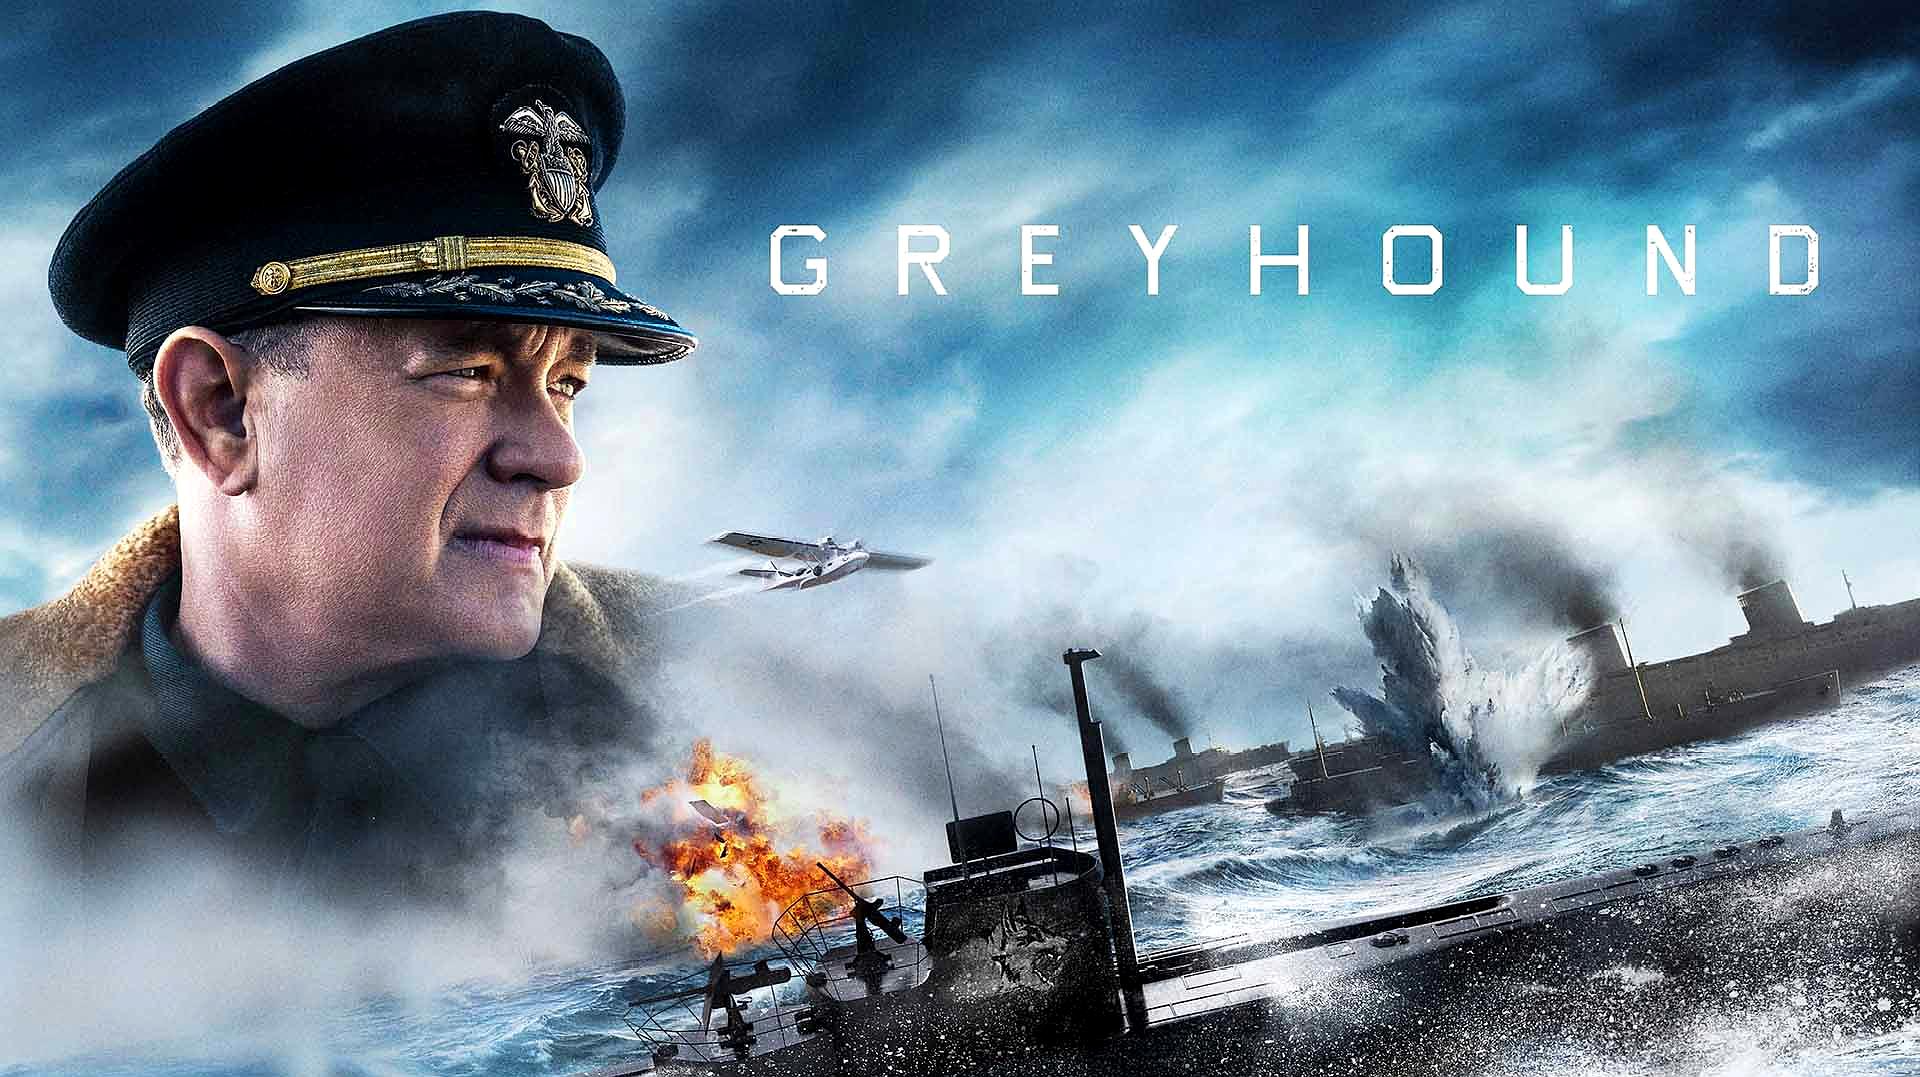 2020年第一战争大片,美军舰队与德国潜艇的生死相搏《灰猎犬号》